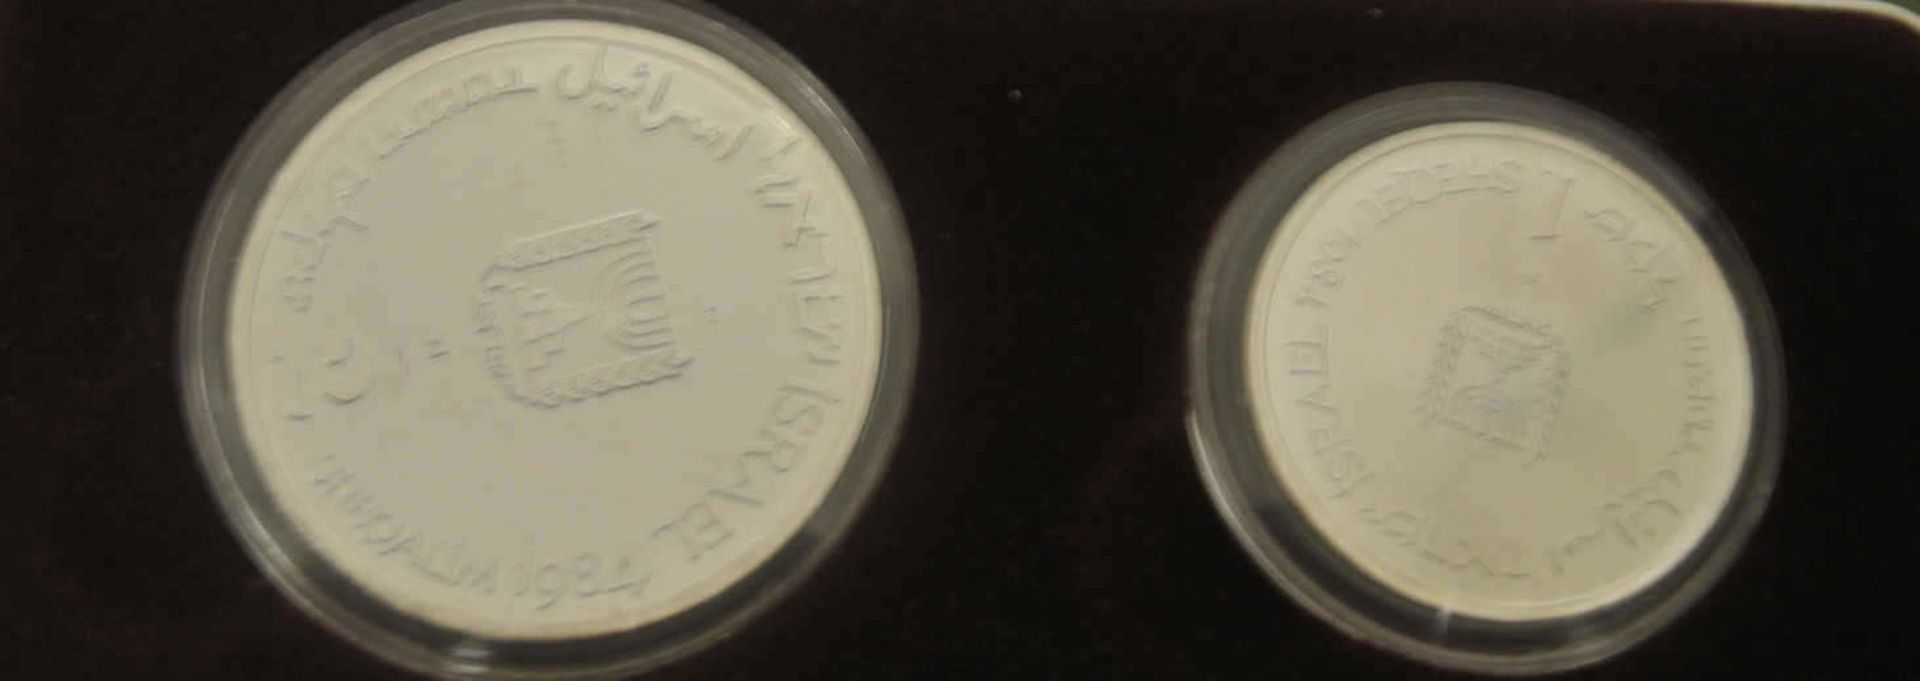 Israel, 2 Silbermünzen. 1 und 2 Shekel 1984, Kinsmen, polierte Platte. In Original Box mit